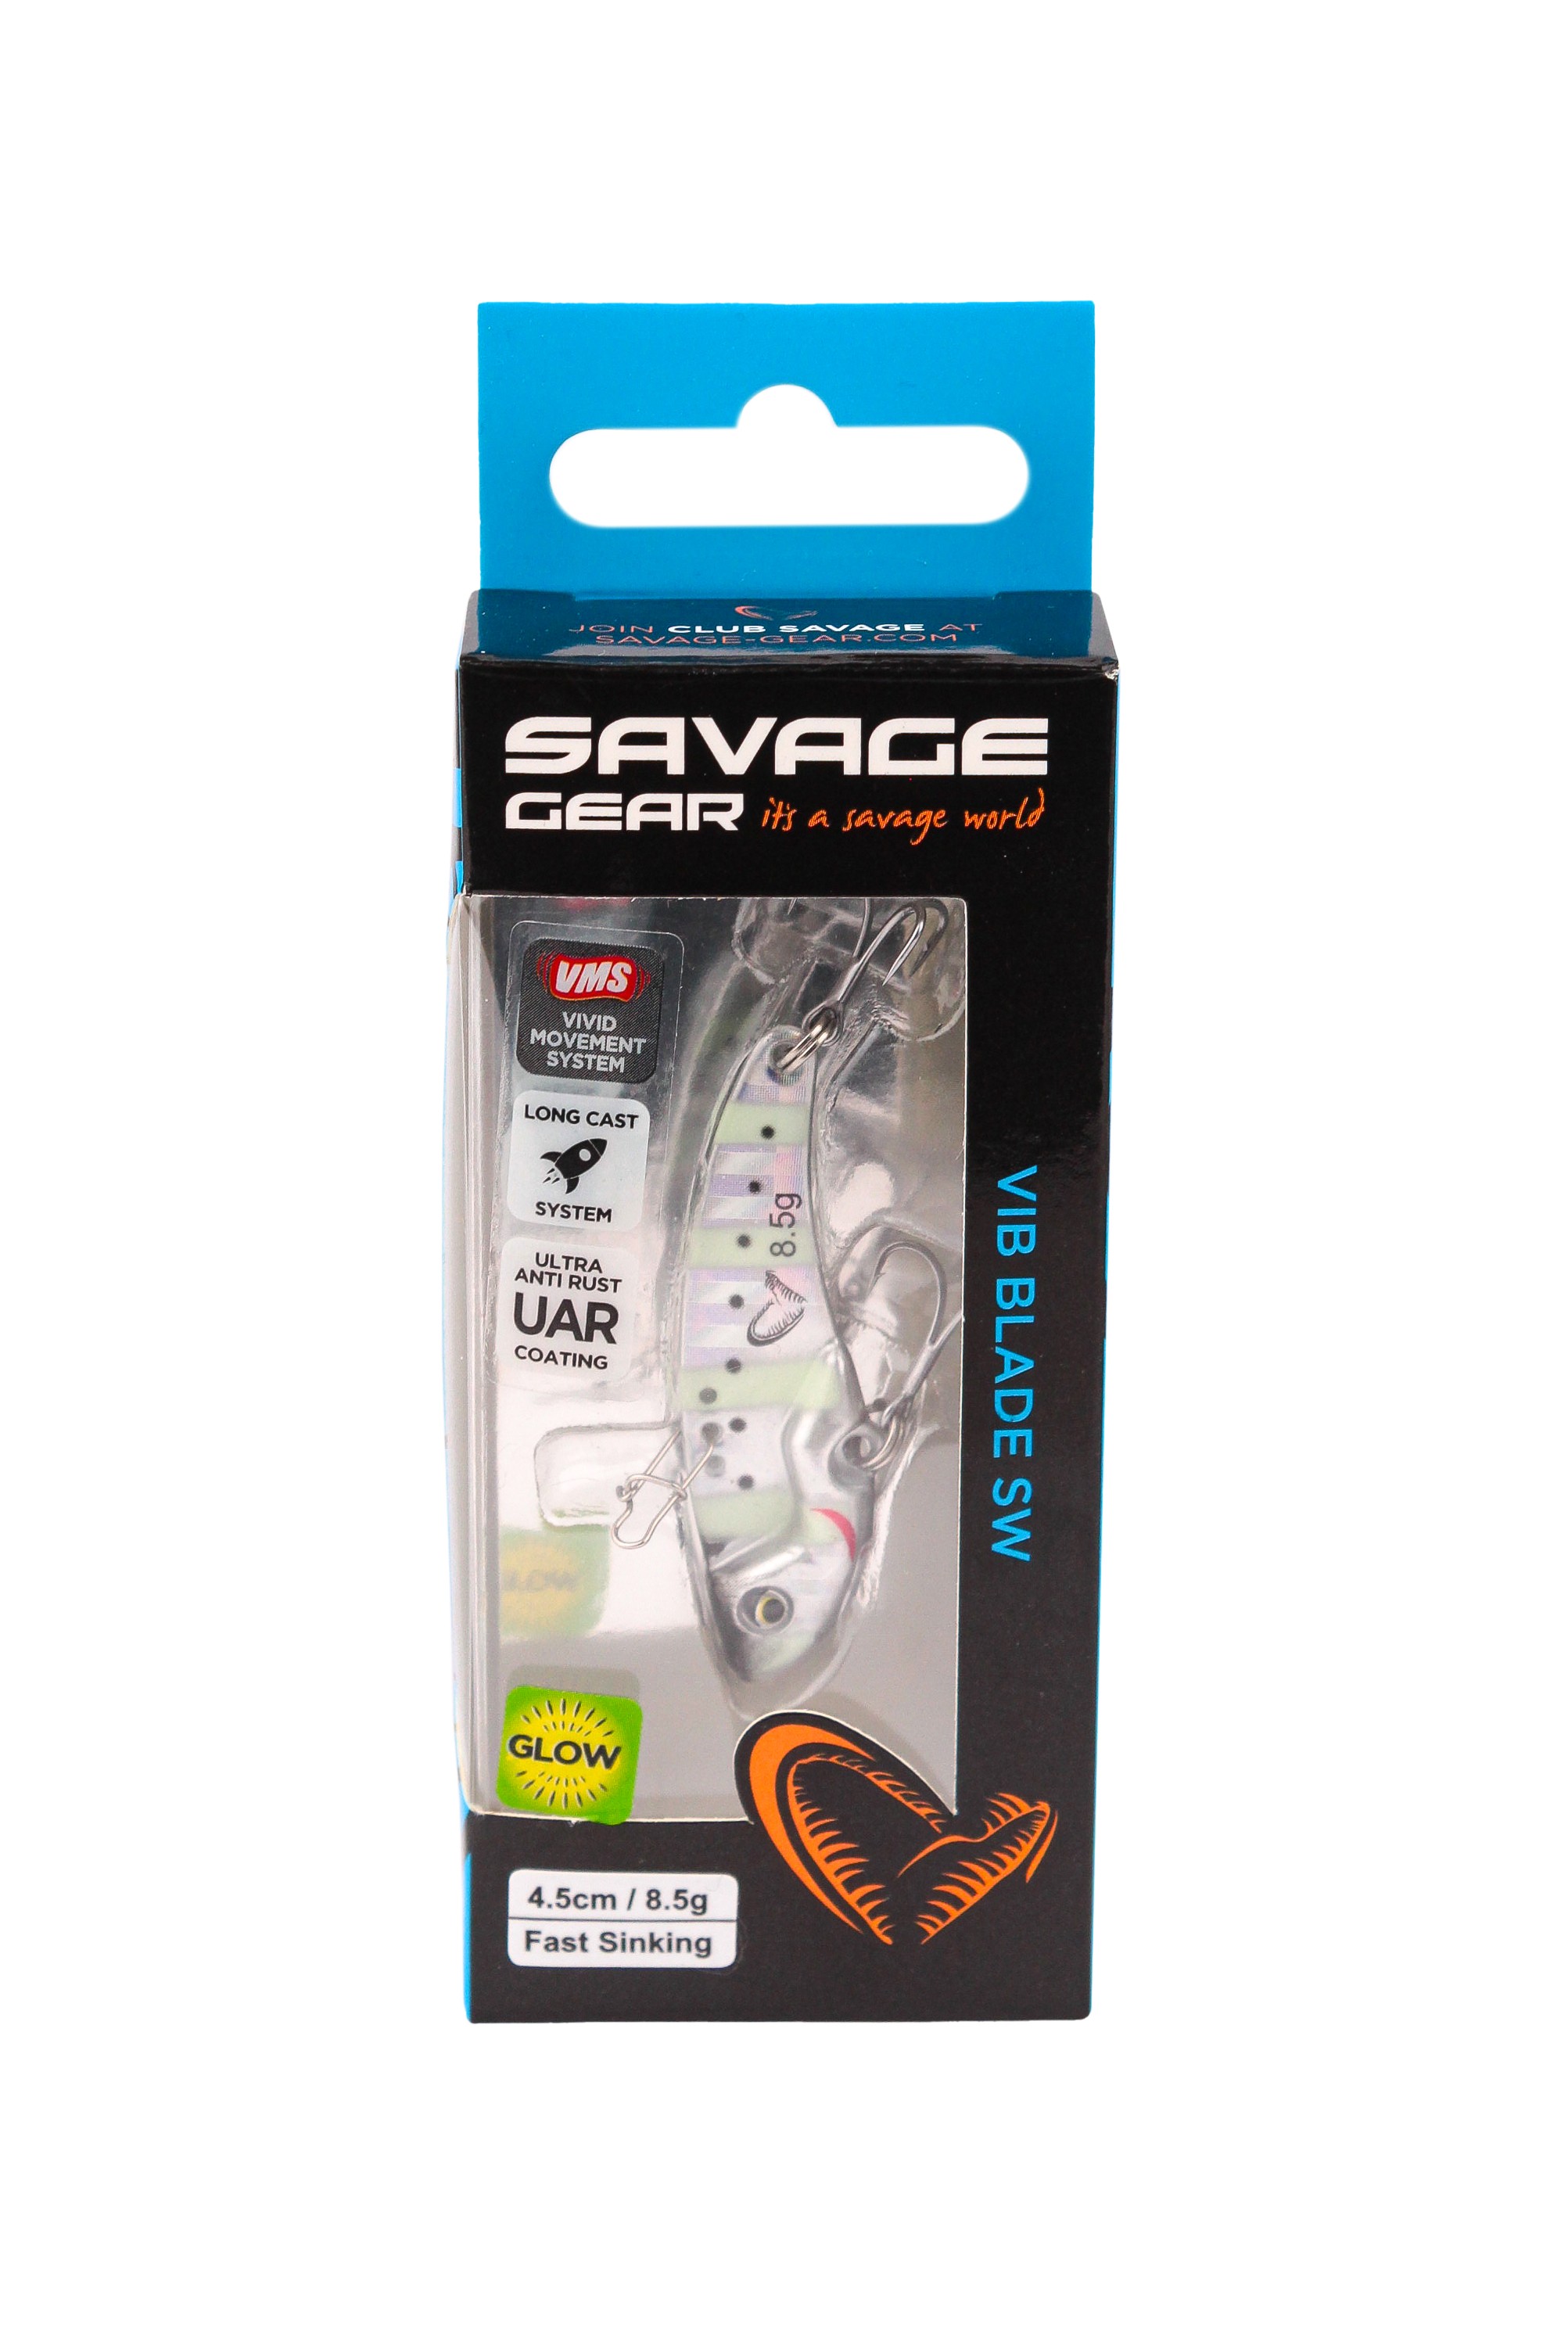 Блесна Savage Gear Vib blade SW 4,5см 8,5гр fast sinking zebra glow - фото 1